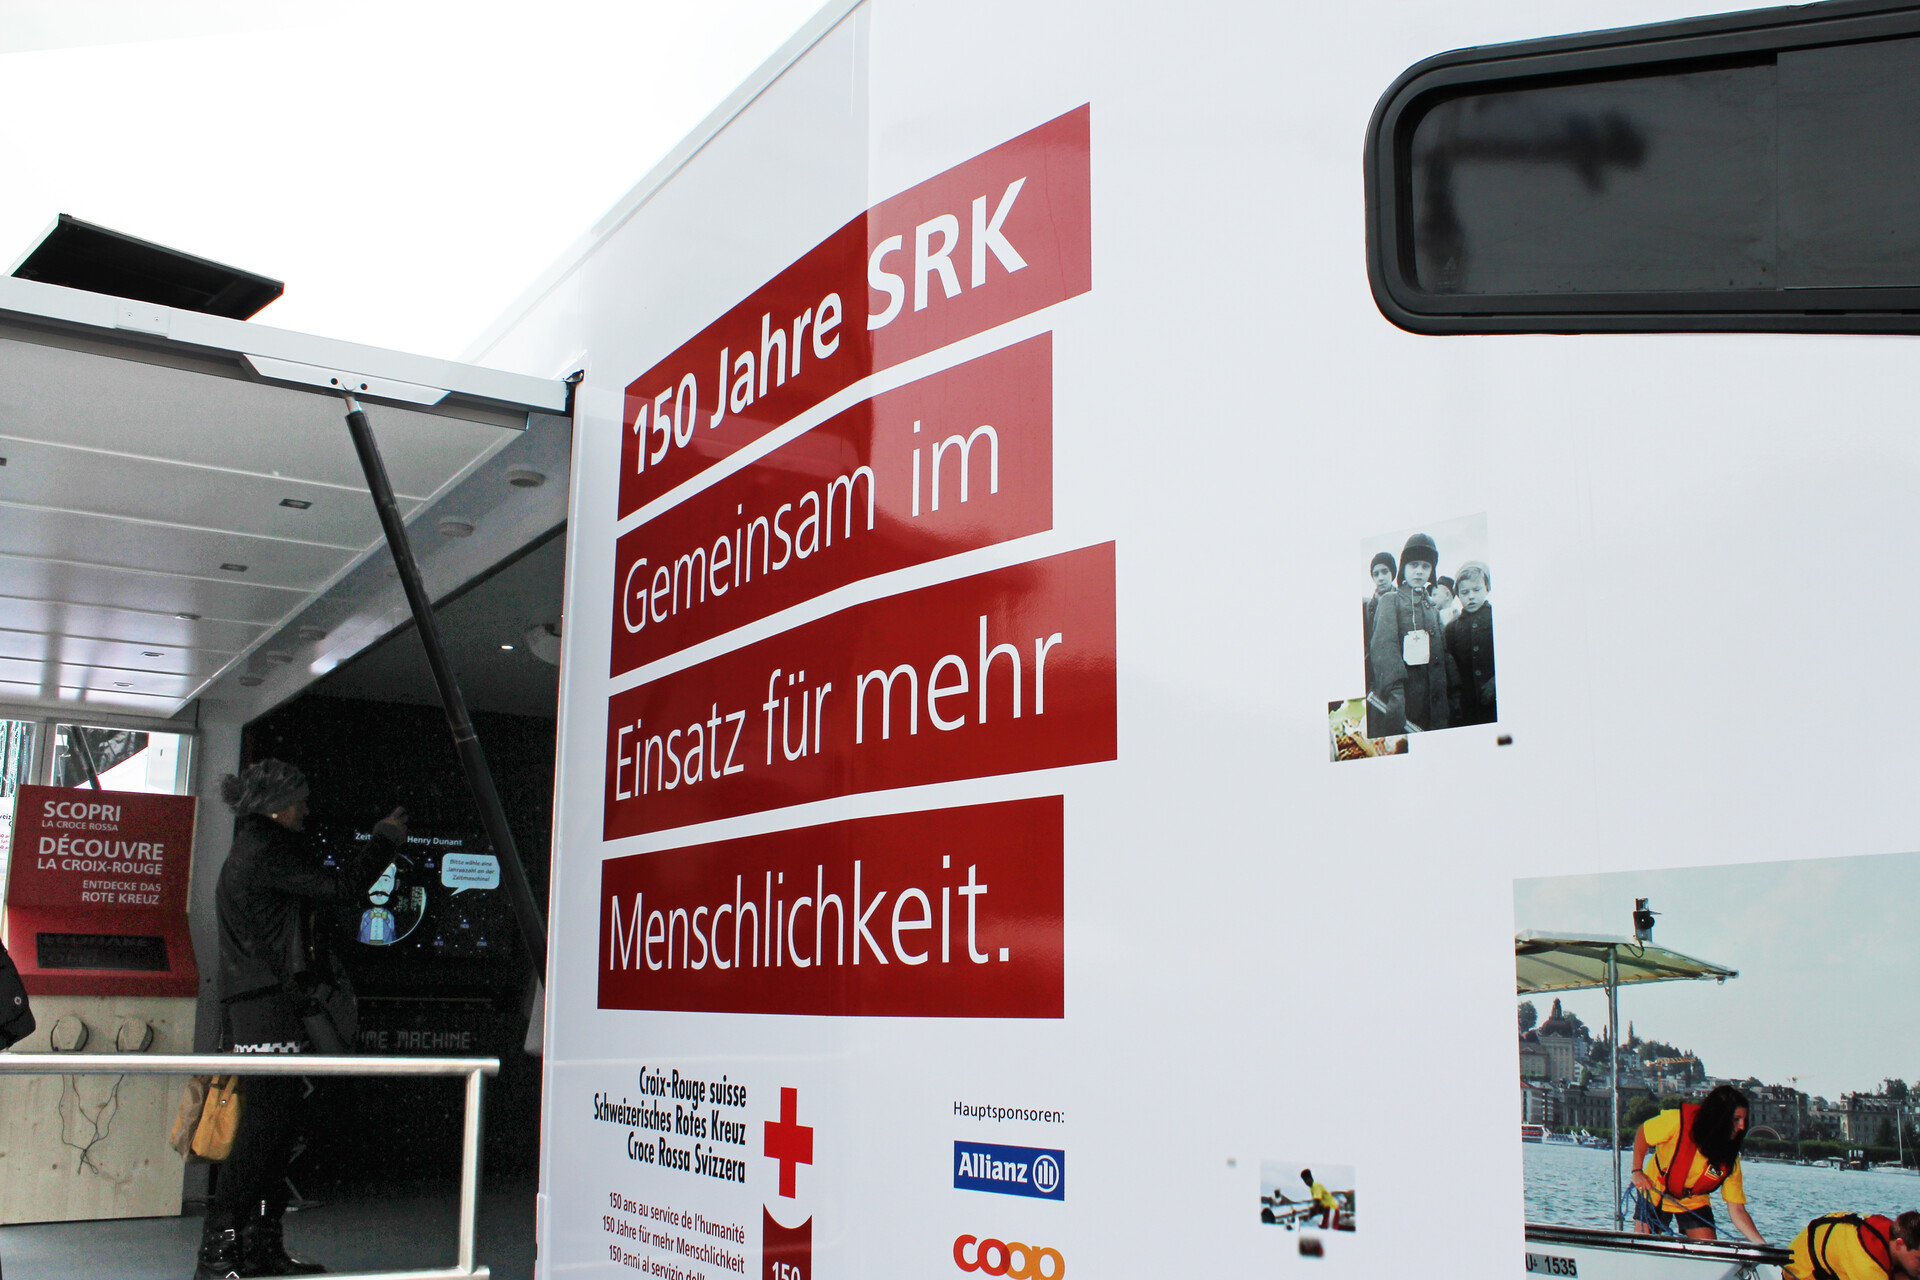 srk-infomobil-branding-1.jpg